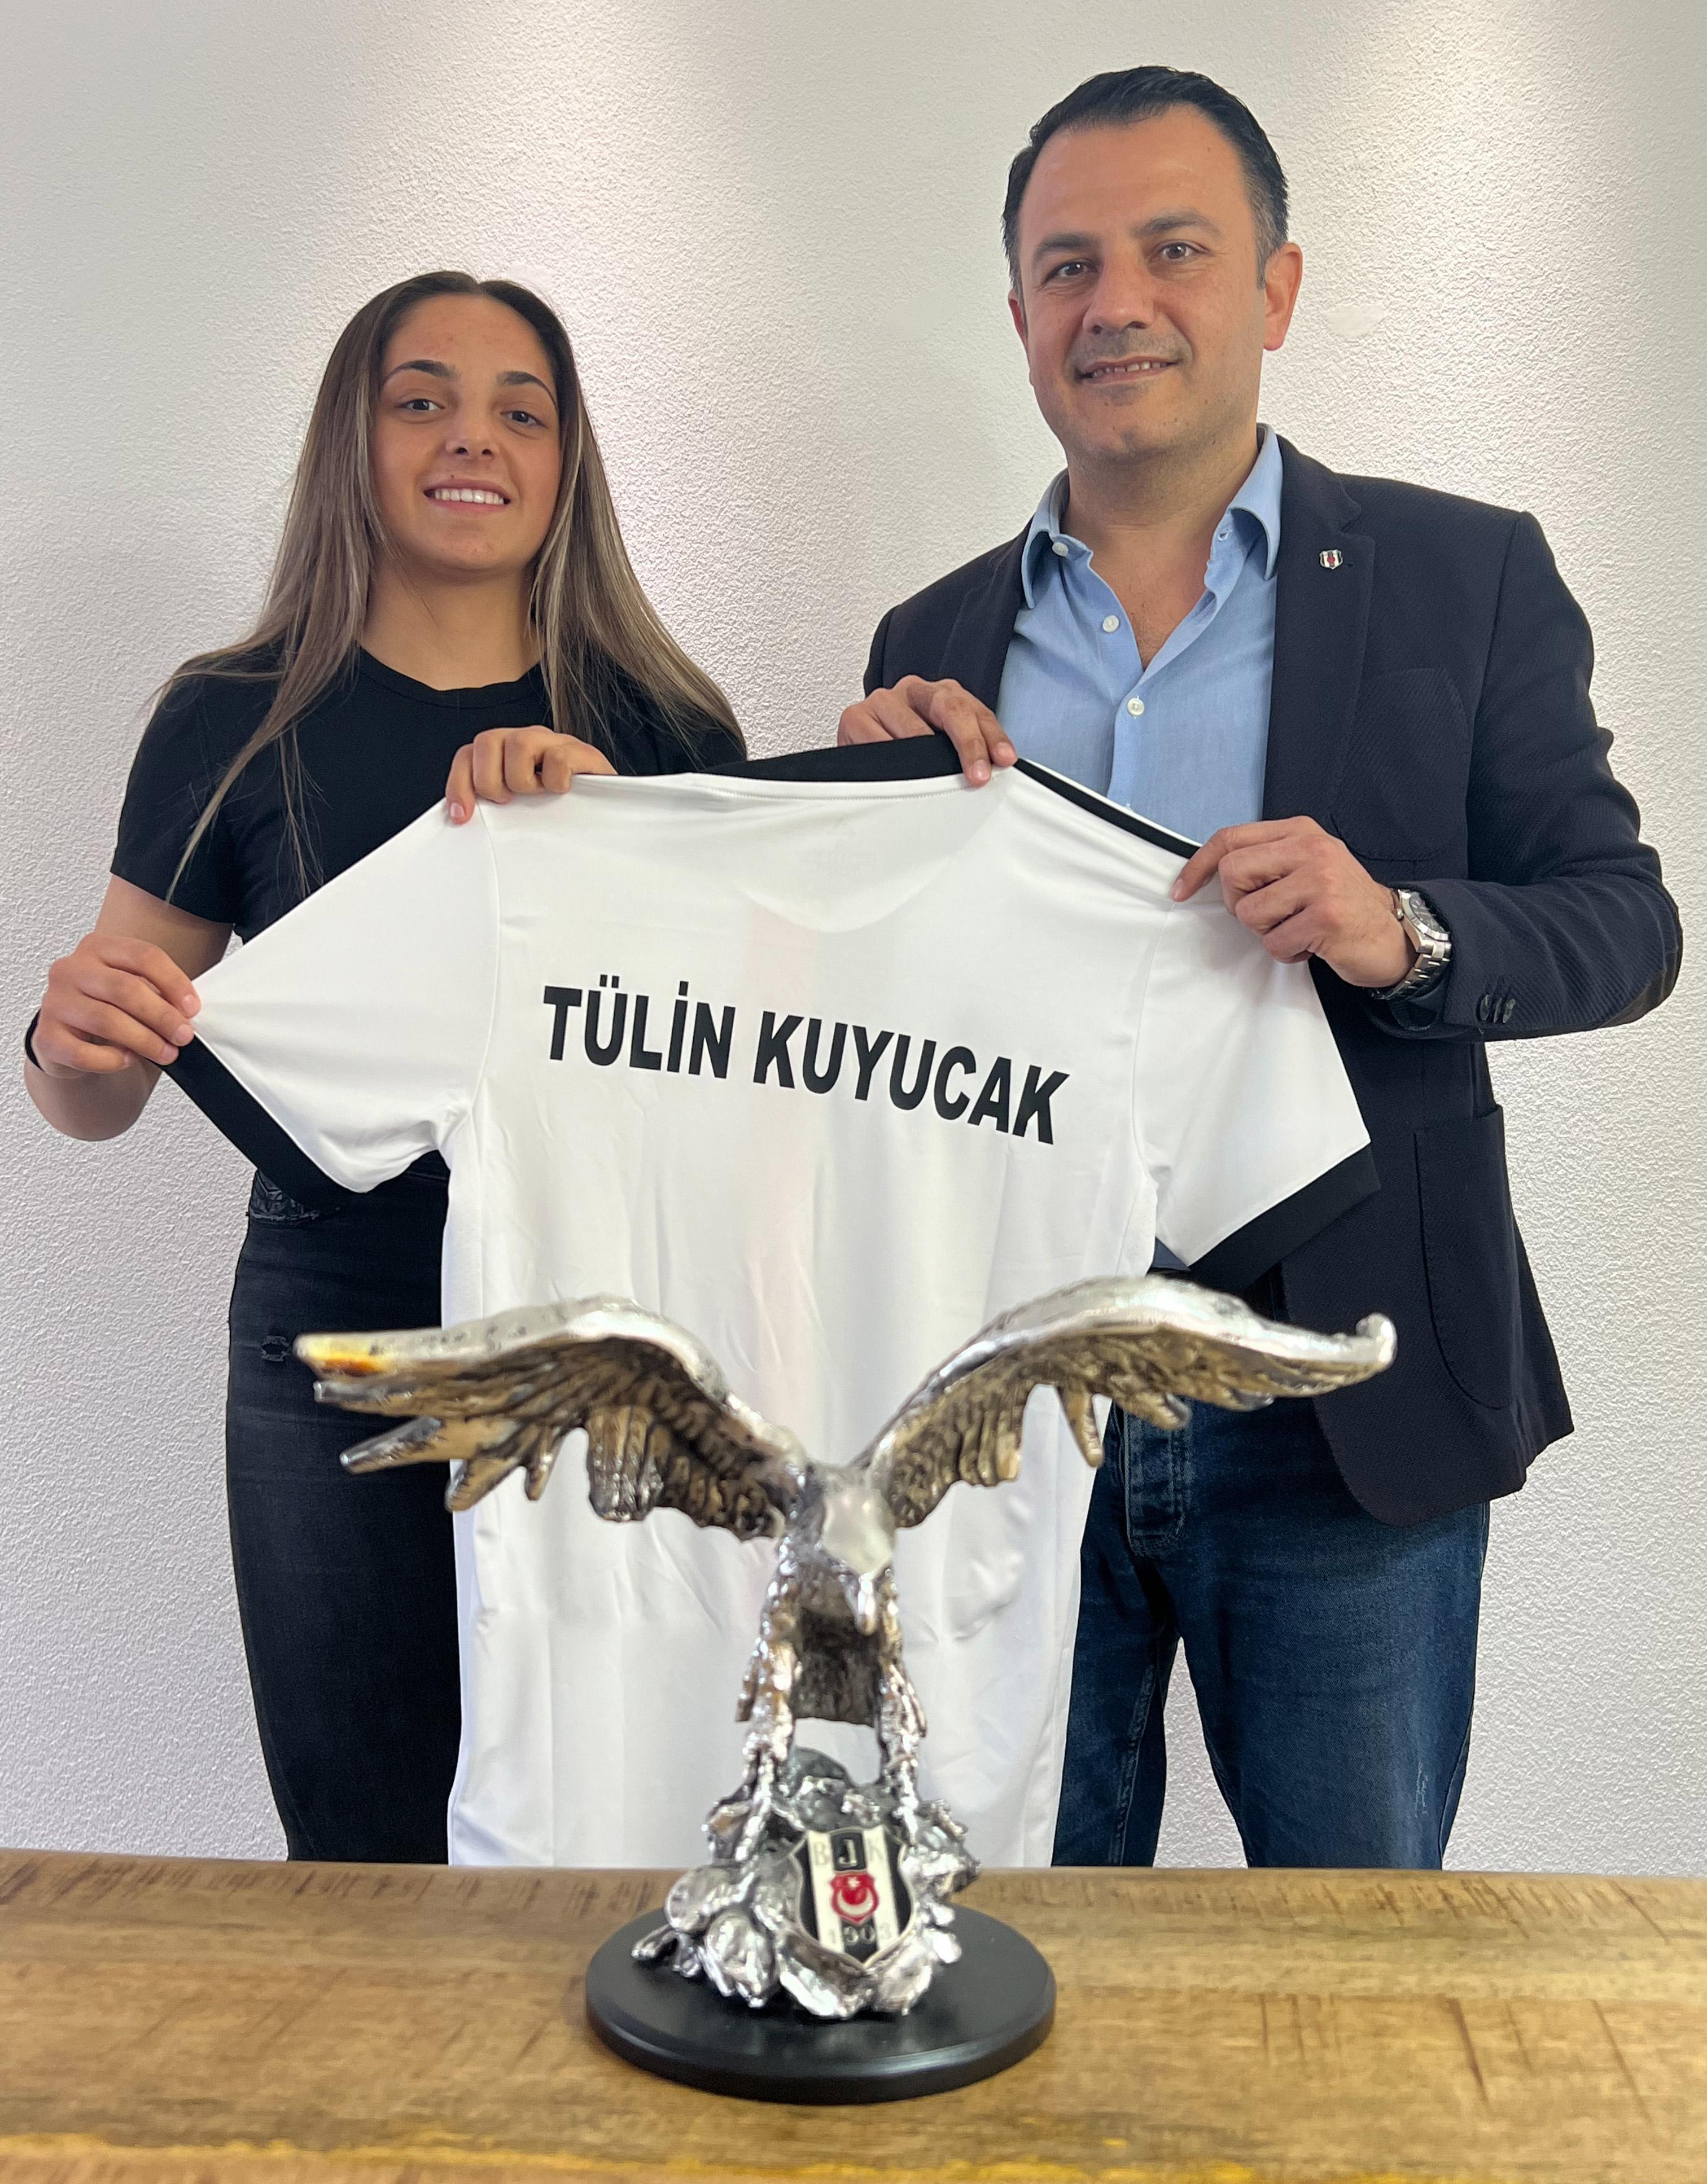 Beşiktaş, Tülin Kuyucakı transfer etti